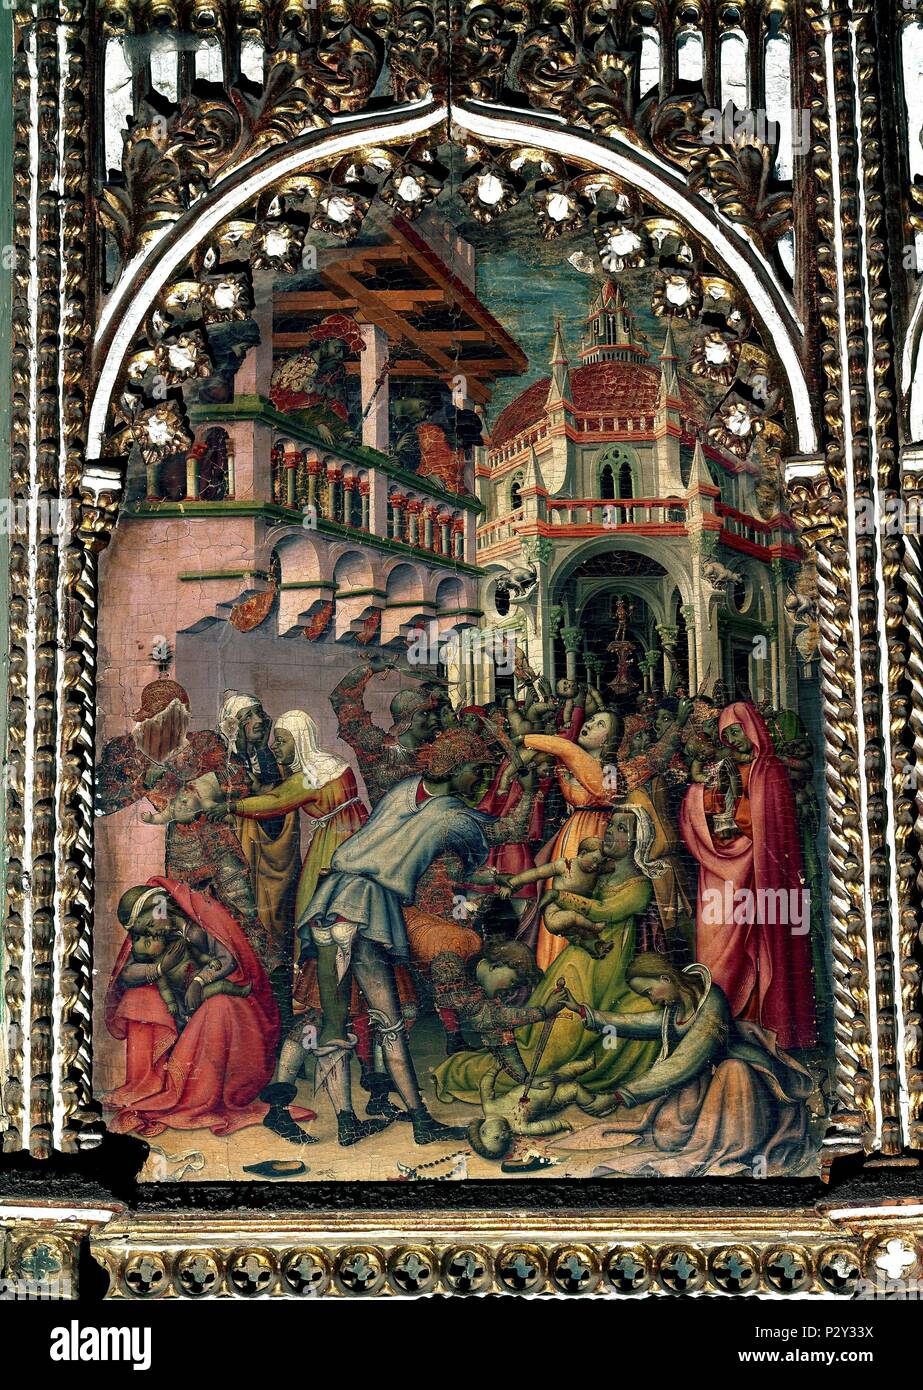 Massacre of the Innocents. (Degollación de Inocentes). Salamanca, Old Cathedral. Author: Nicolò Delli (1403-1470). Location: CATEDRAL VIEJA, SALAMANCA, SPAIN. Stock Photo